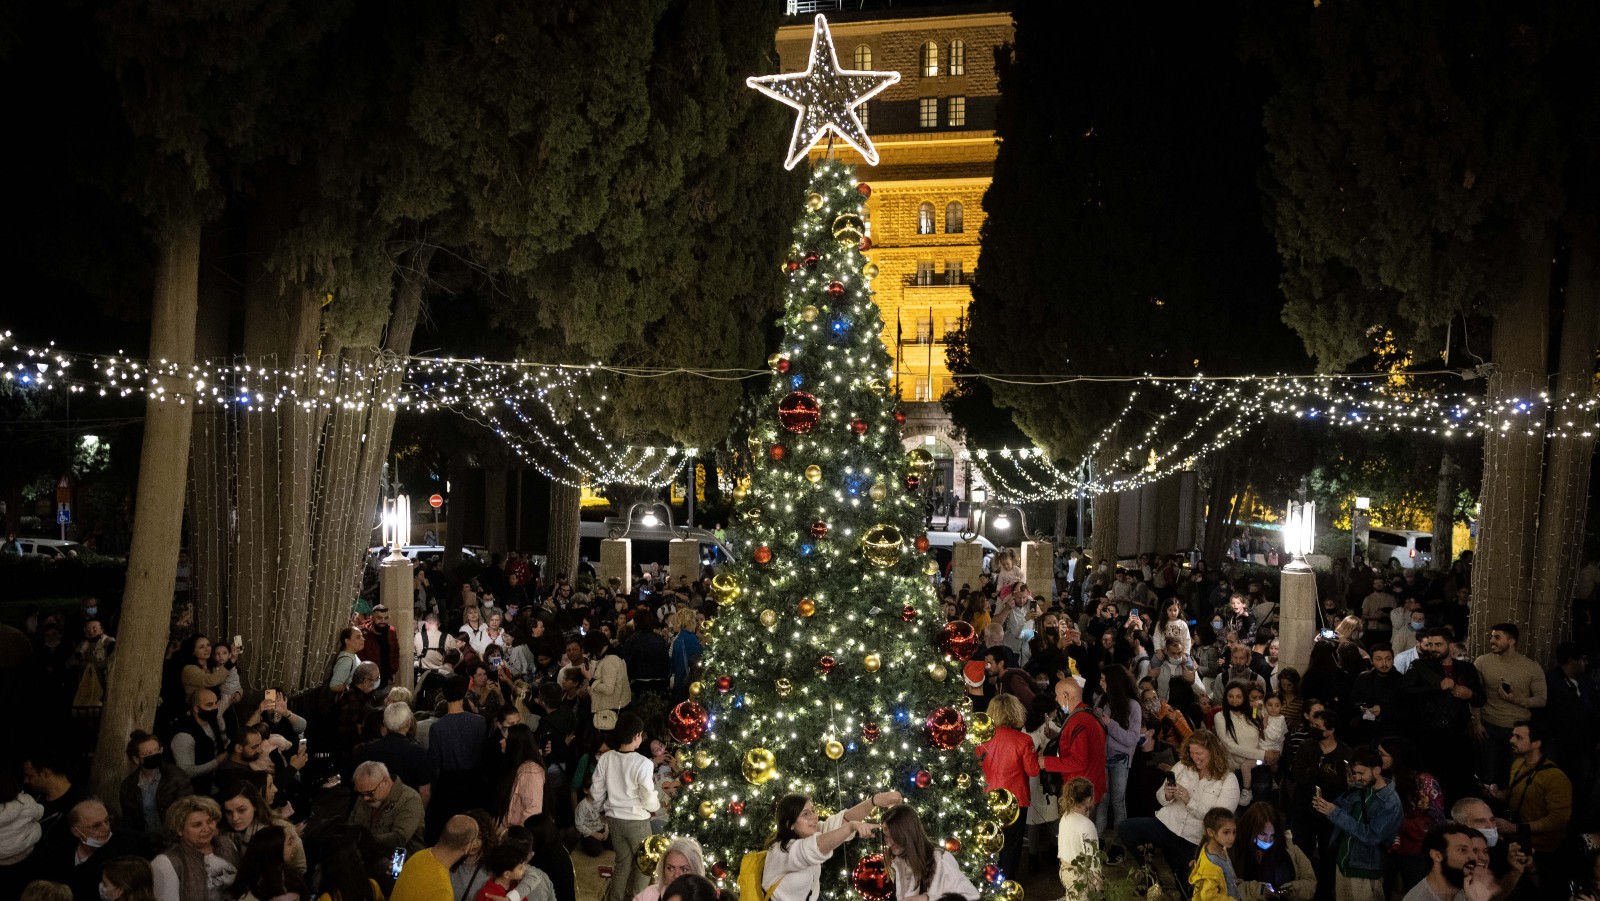 Christmas lights up Jerusalem after Covid hiatus ISRAEL21c